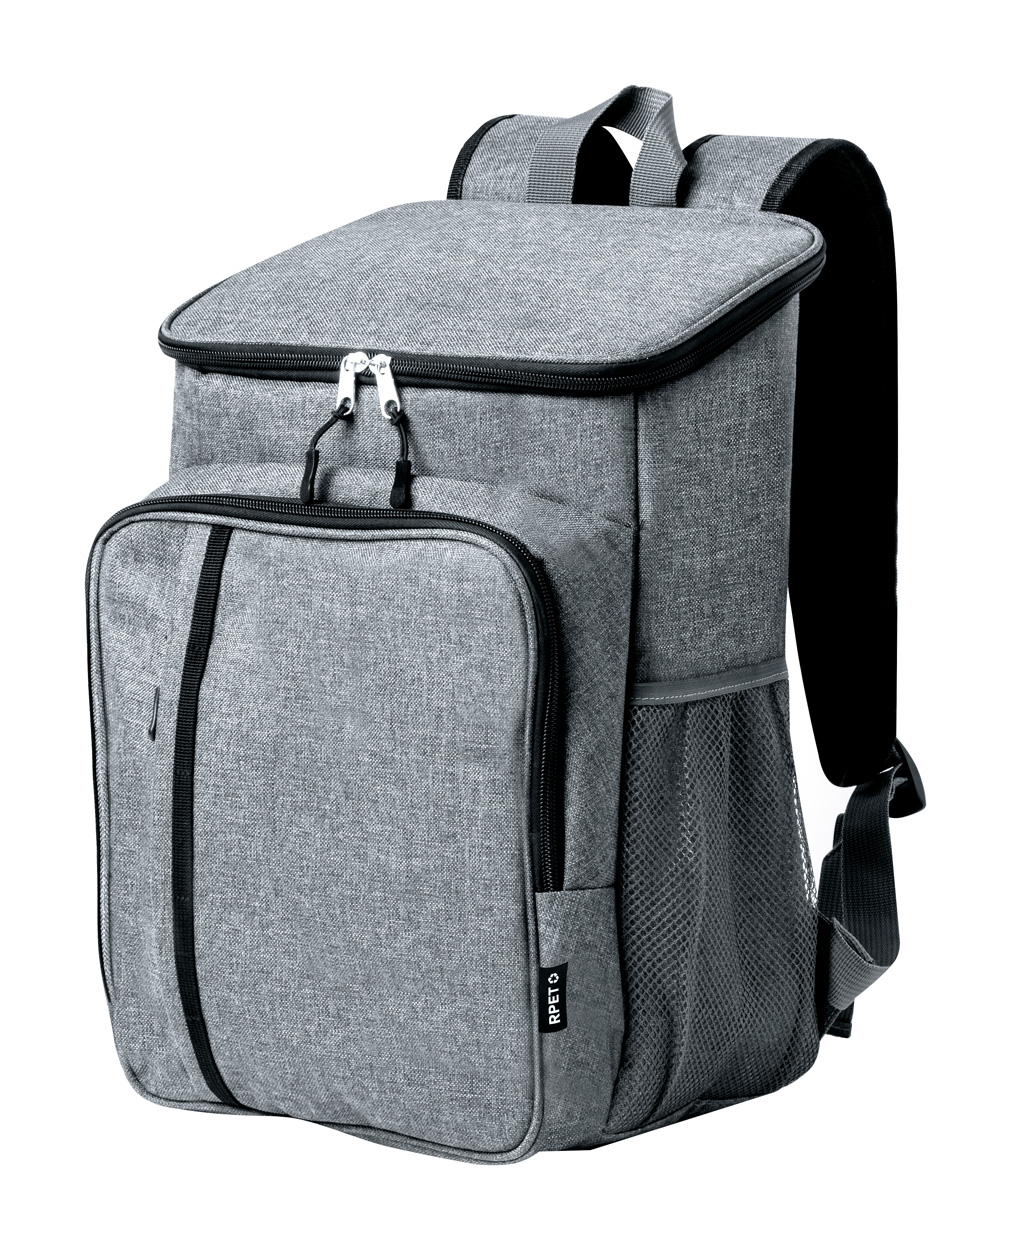 Shira cooling picnic backpack - grey